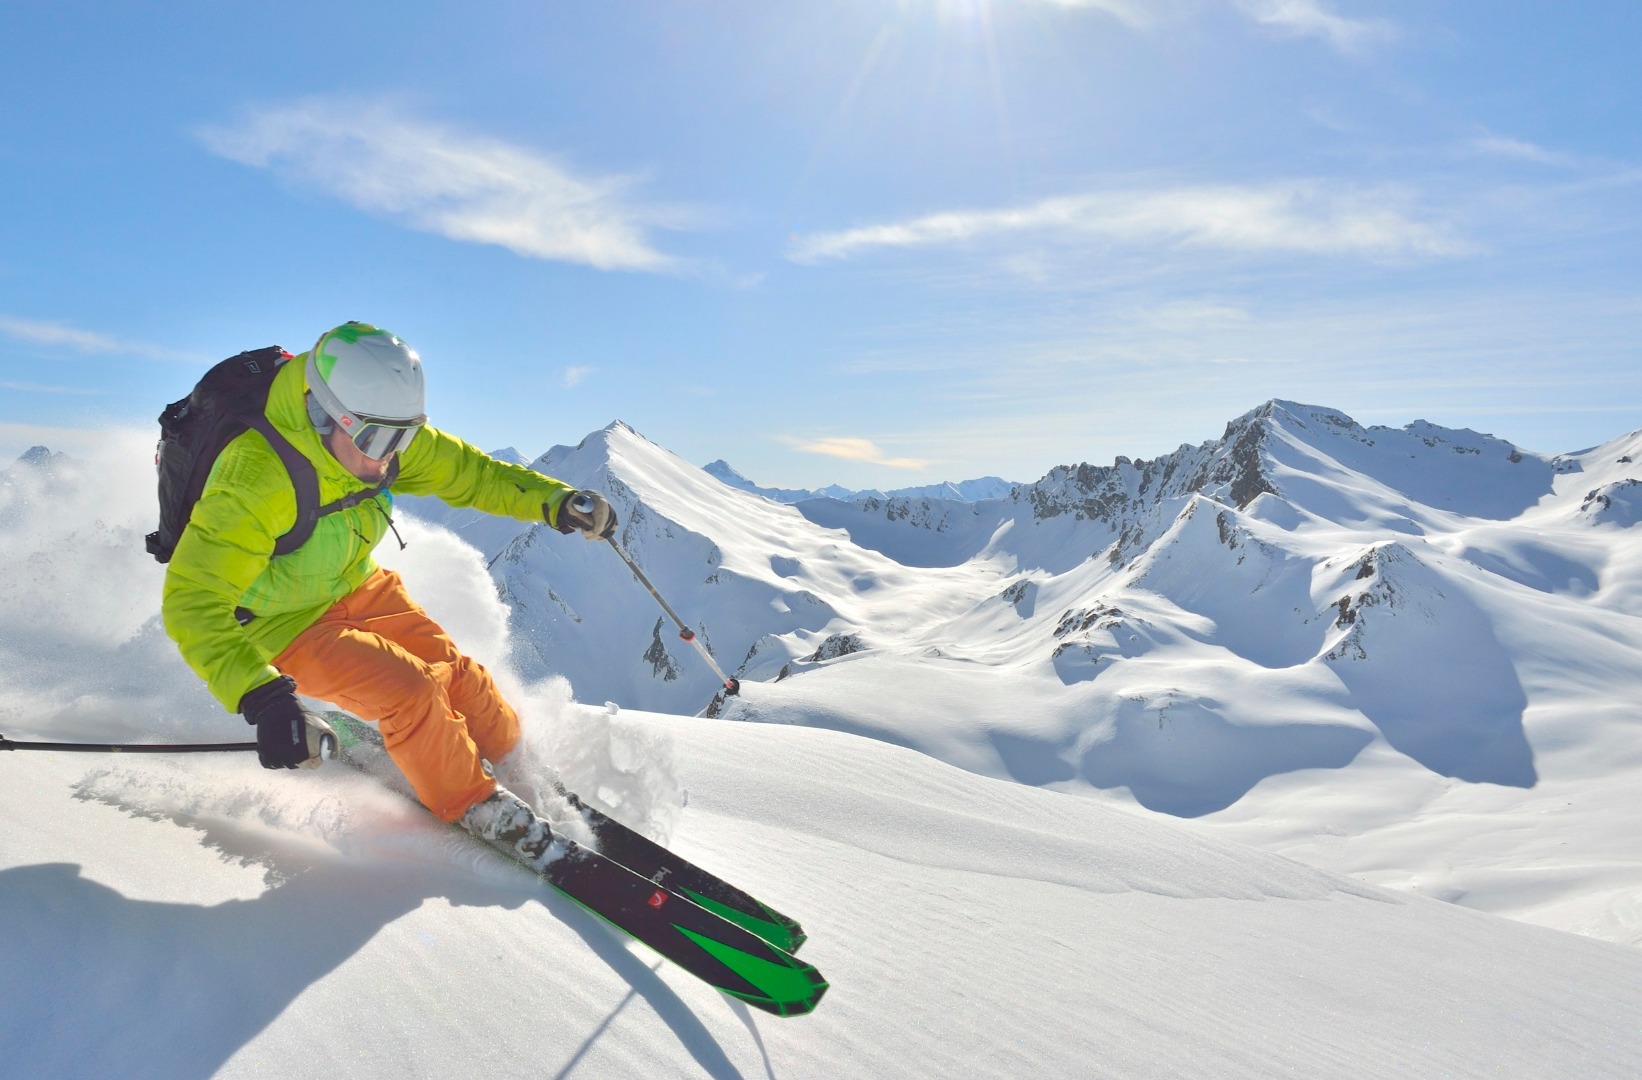 Tilbud på billige skirejser, kør selv skiferie i Tyrol og Østrig